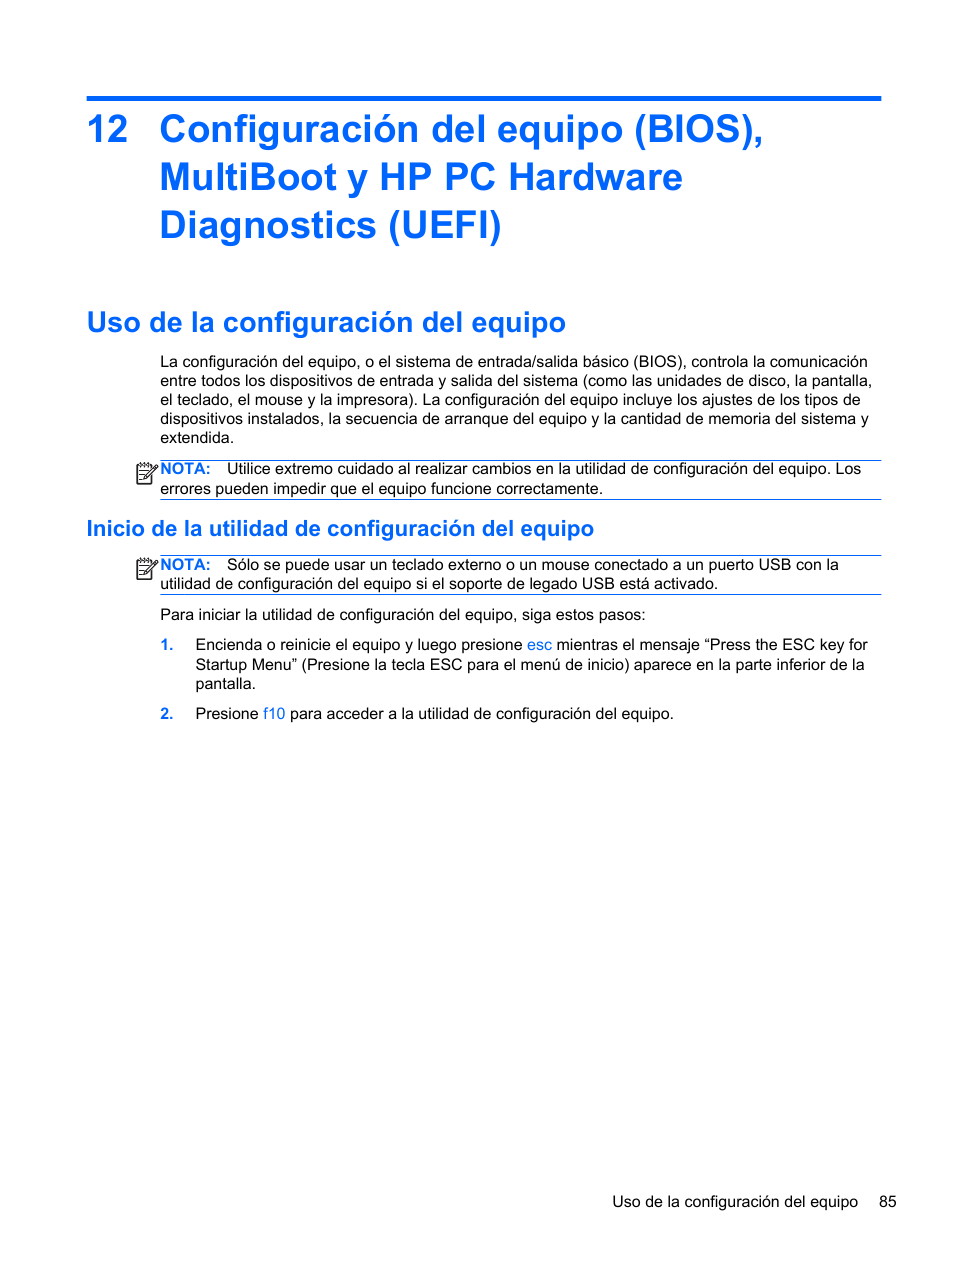 Uso de la configuración del equipo, Inicio de la utilidad de configuración del equipo | HP Estación de trabajo portátil HP ZBook 15 Manual del usuario | Página 95 / 117